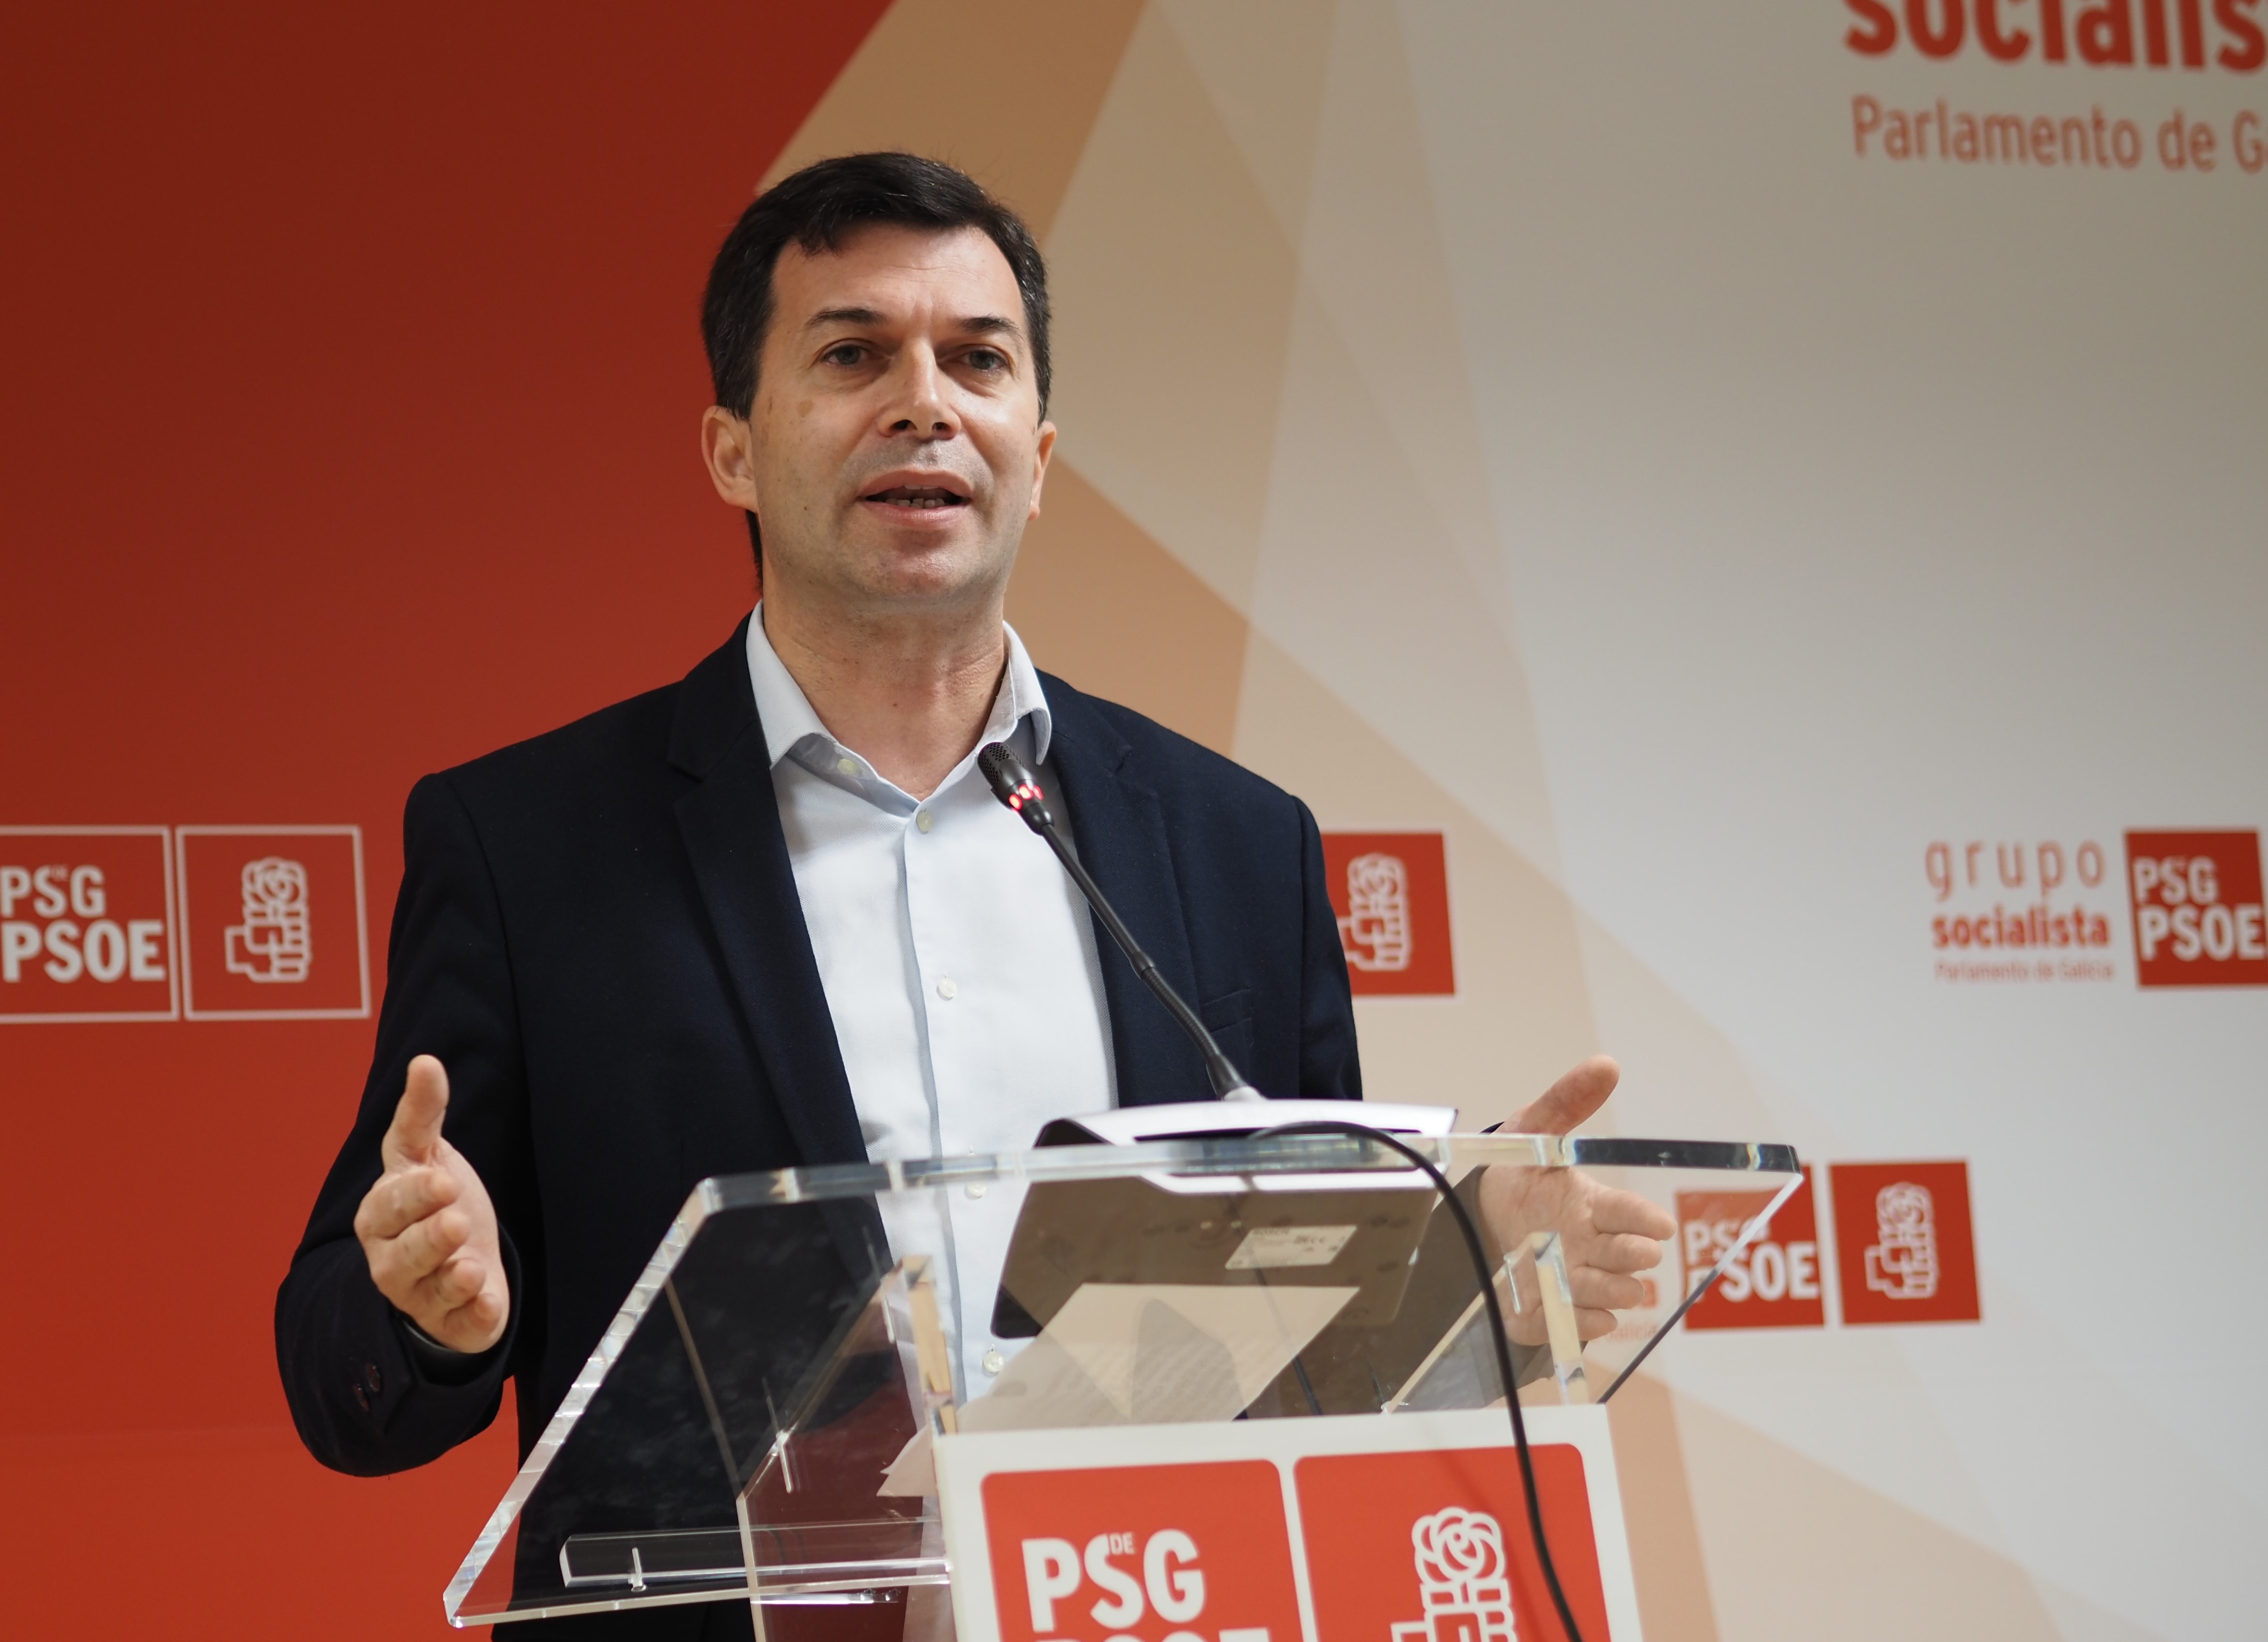 Foto da noticia: Gonzalo Caballero urxe a Feijóo a "liderar un gran acordo industrial" para afrontar a "nova revolución industrial" en Galicia